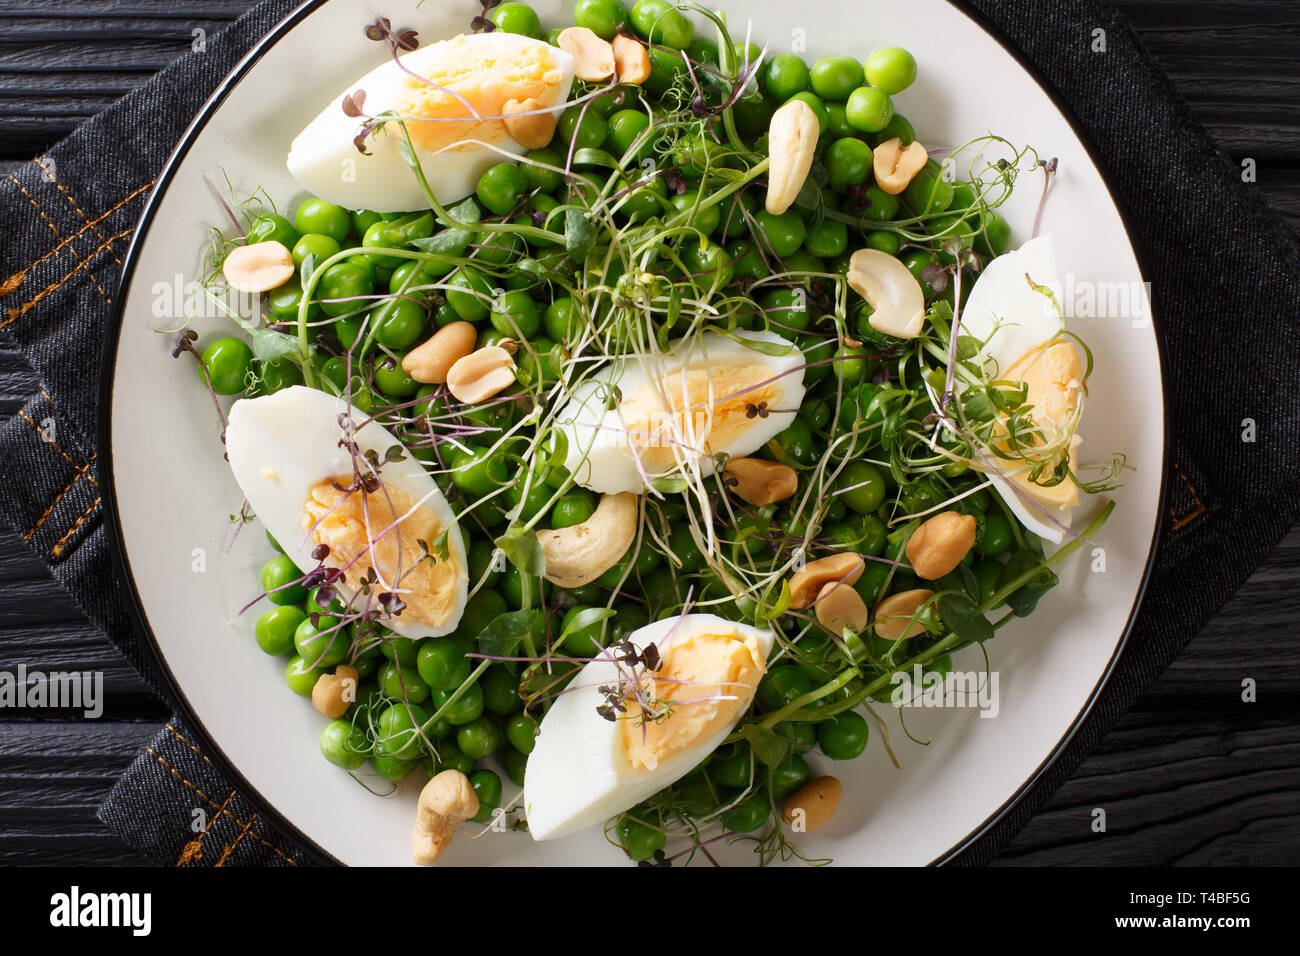 Organische vitamin Salat von grünen Erbsen, micro Grüns, Nüsse und Eier close-up auf einem Teller auf den Tisch. Horizontal oben Ansicht von oben Stockfoto